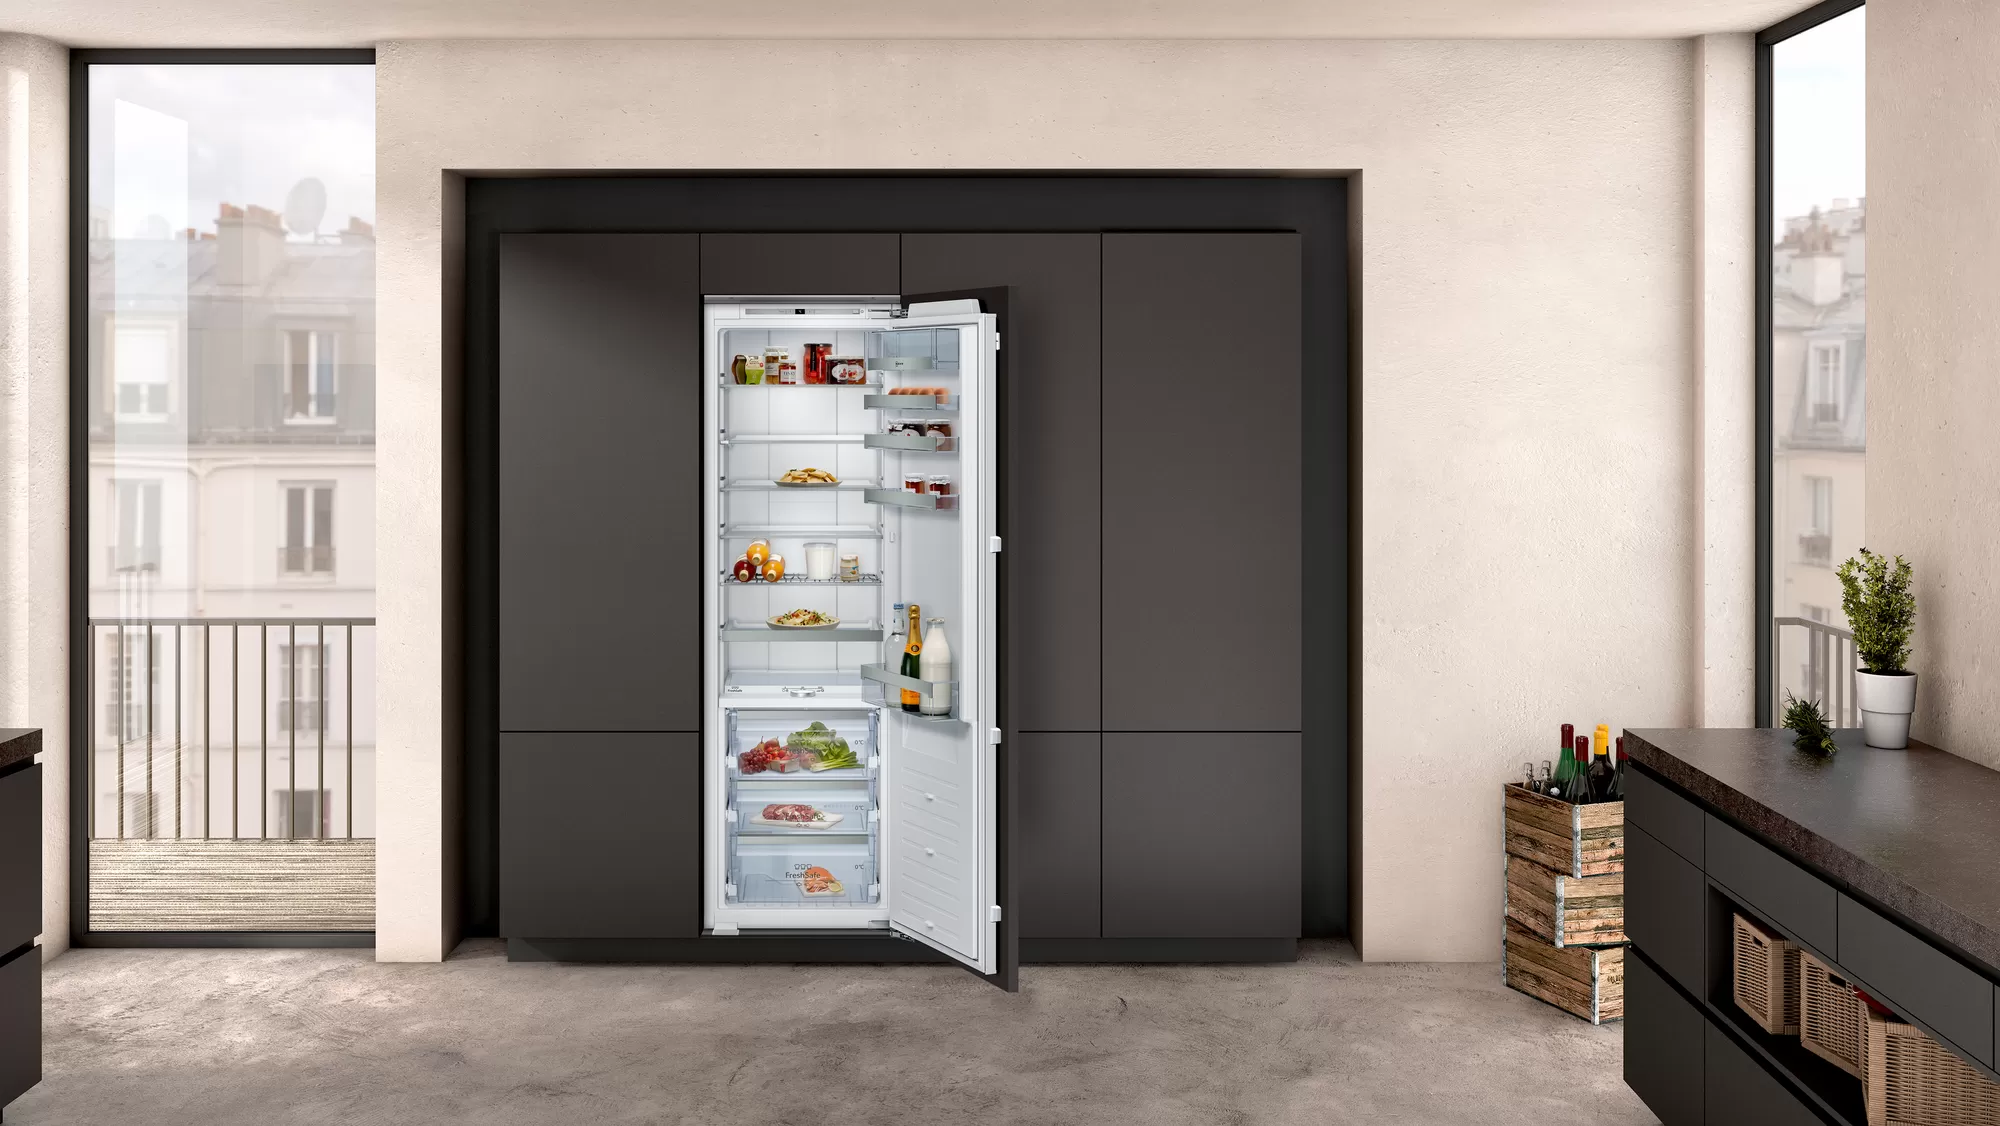 Как выбрать встраиваемый холодильник на кухню: 17 советов от экспертов